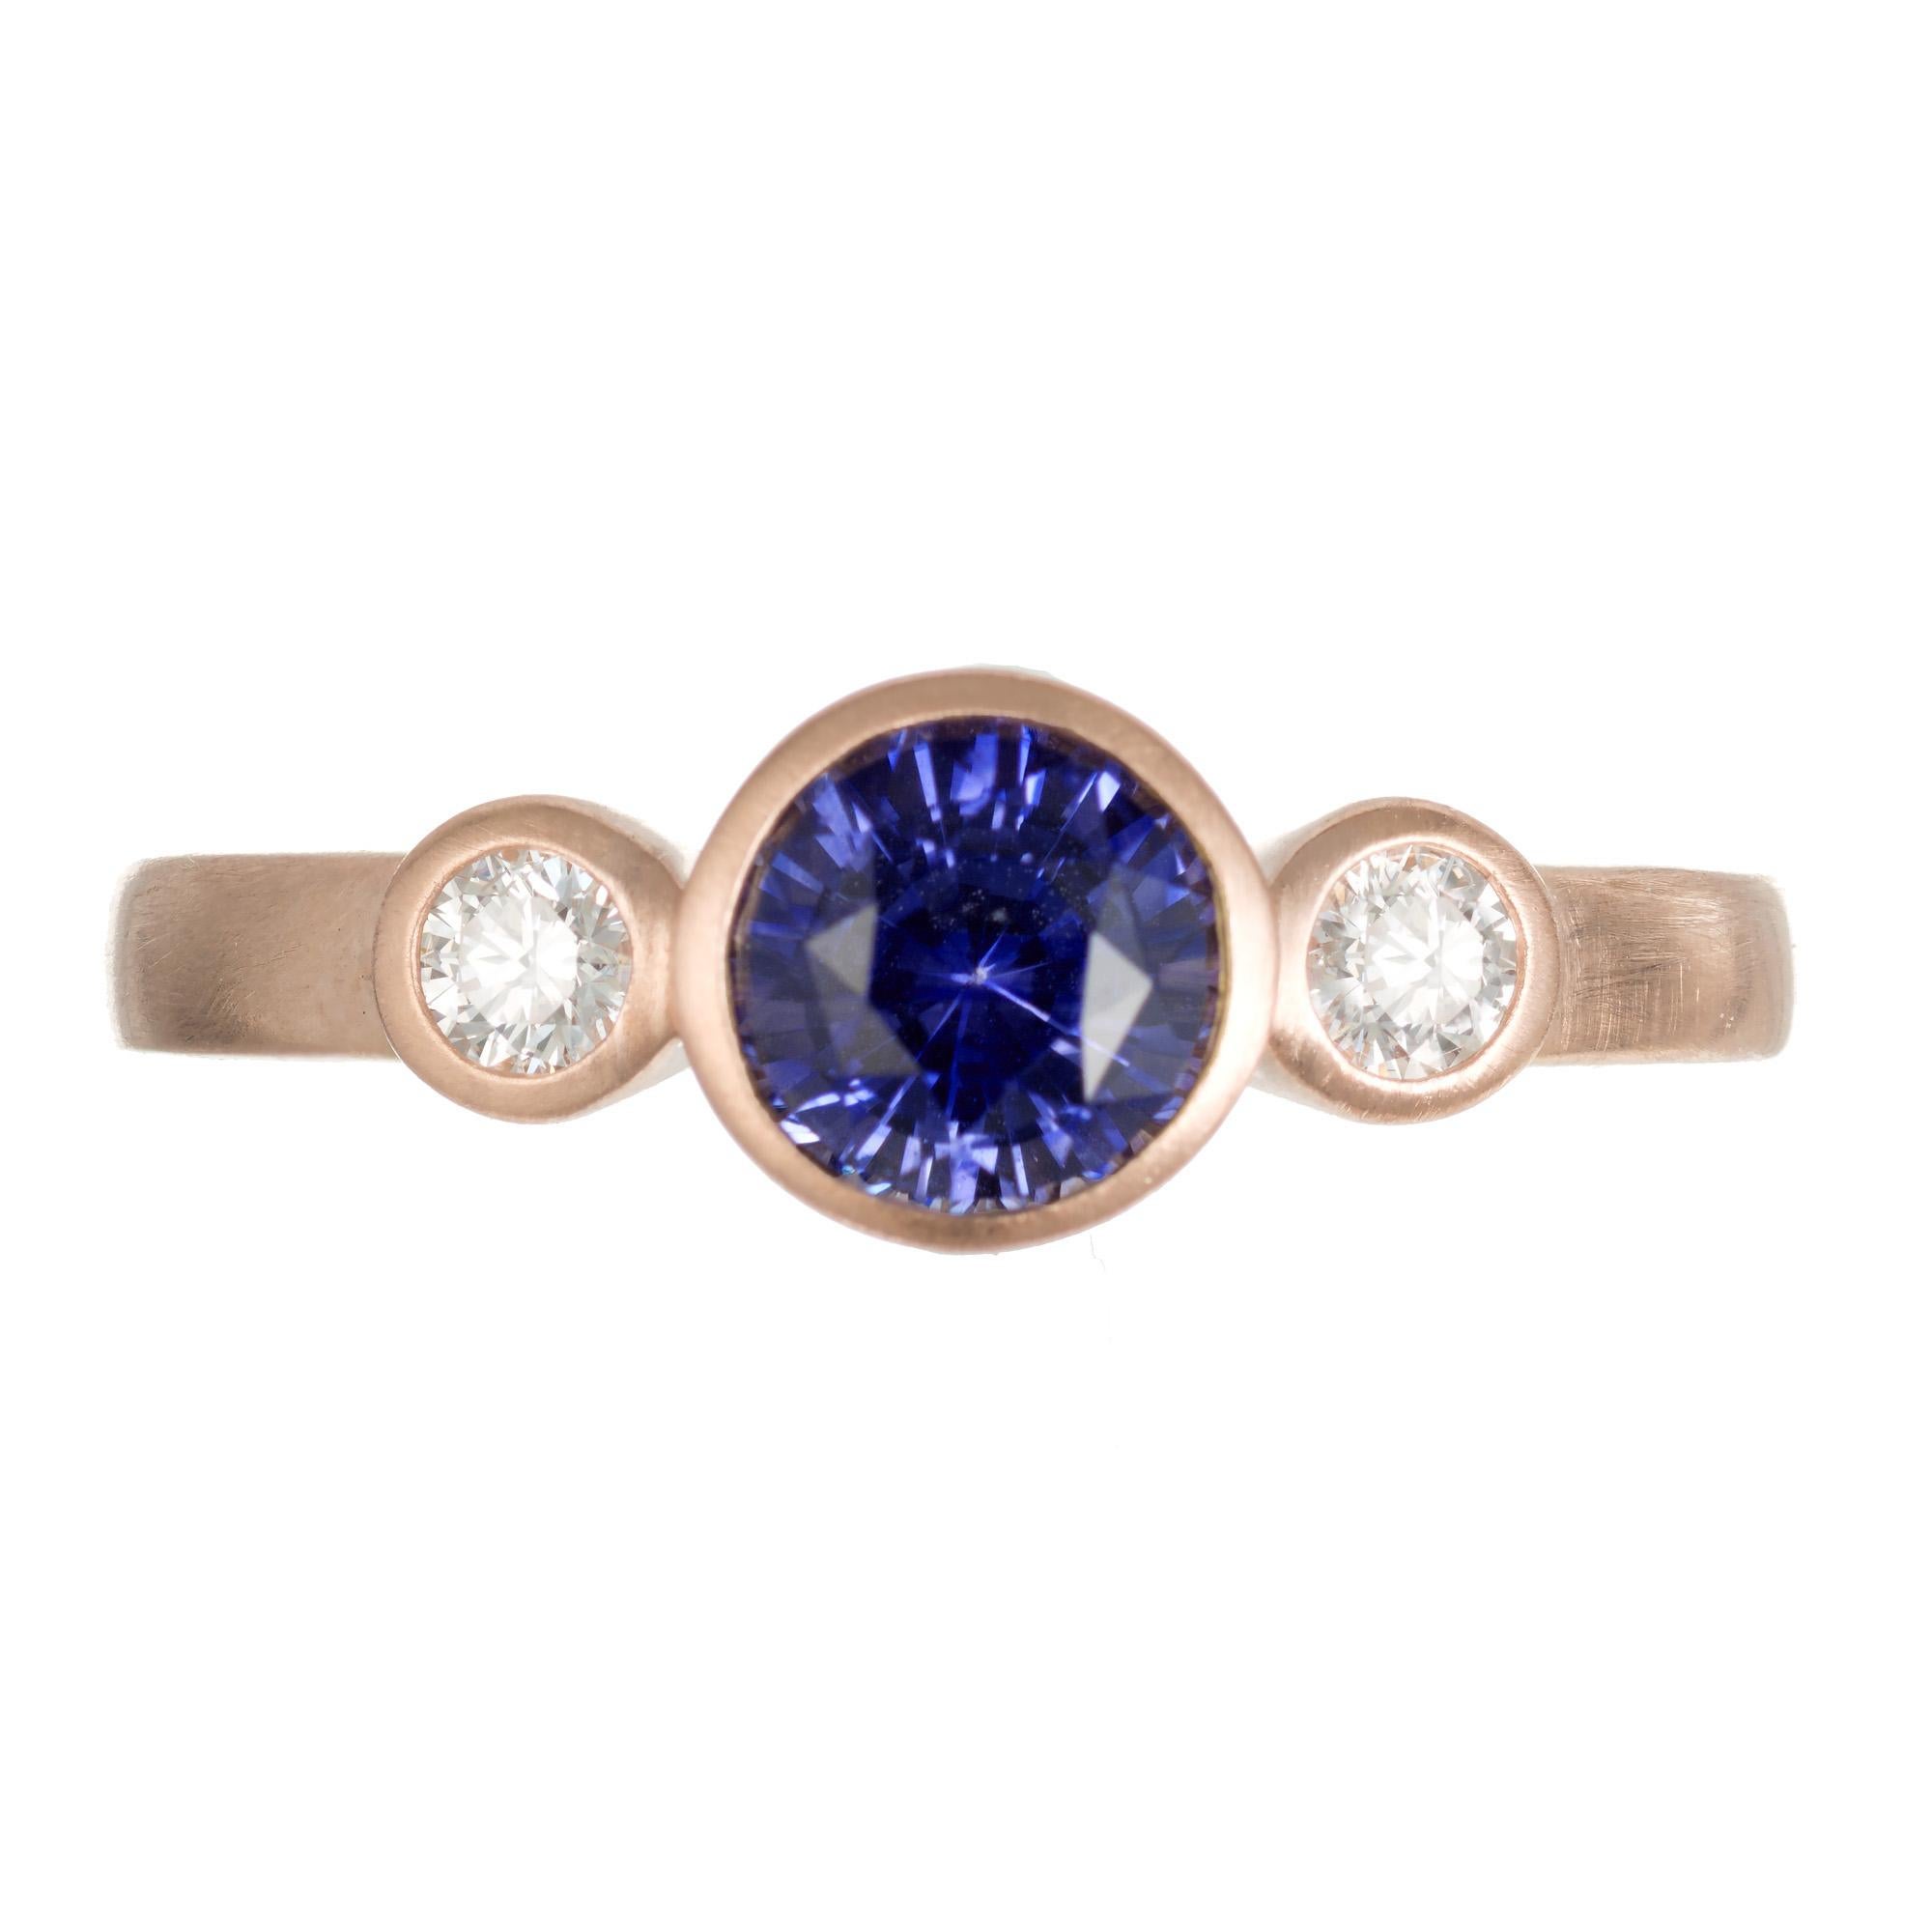 Sri Lanka, Ceylon Saphir und Diamant Verlobungsring. Dieser Ring beginnt mit einem .96ct runde Mitte Saphir, der in einem 14k Rose Gold Lünette Einstellung montiert ist. Der sattblaue und violette Saphir wird durch einen runden Diamanten im